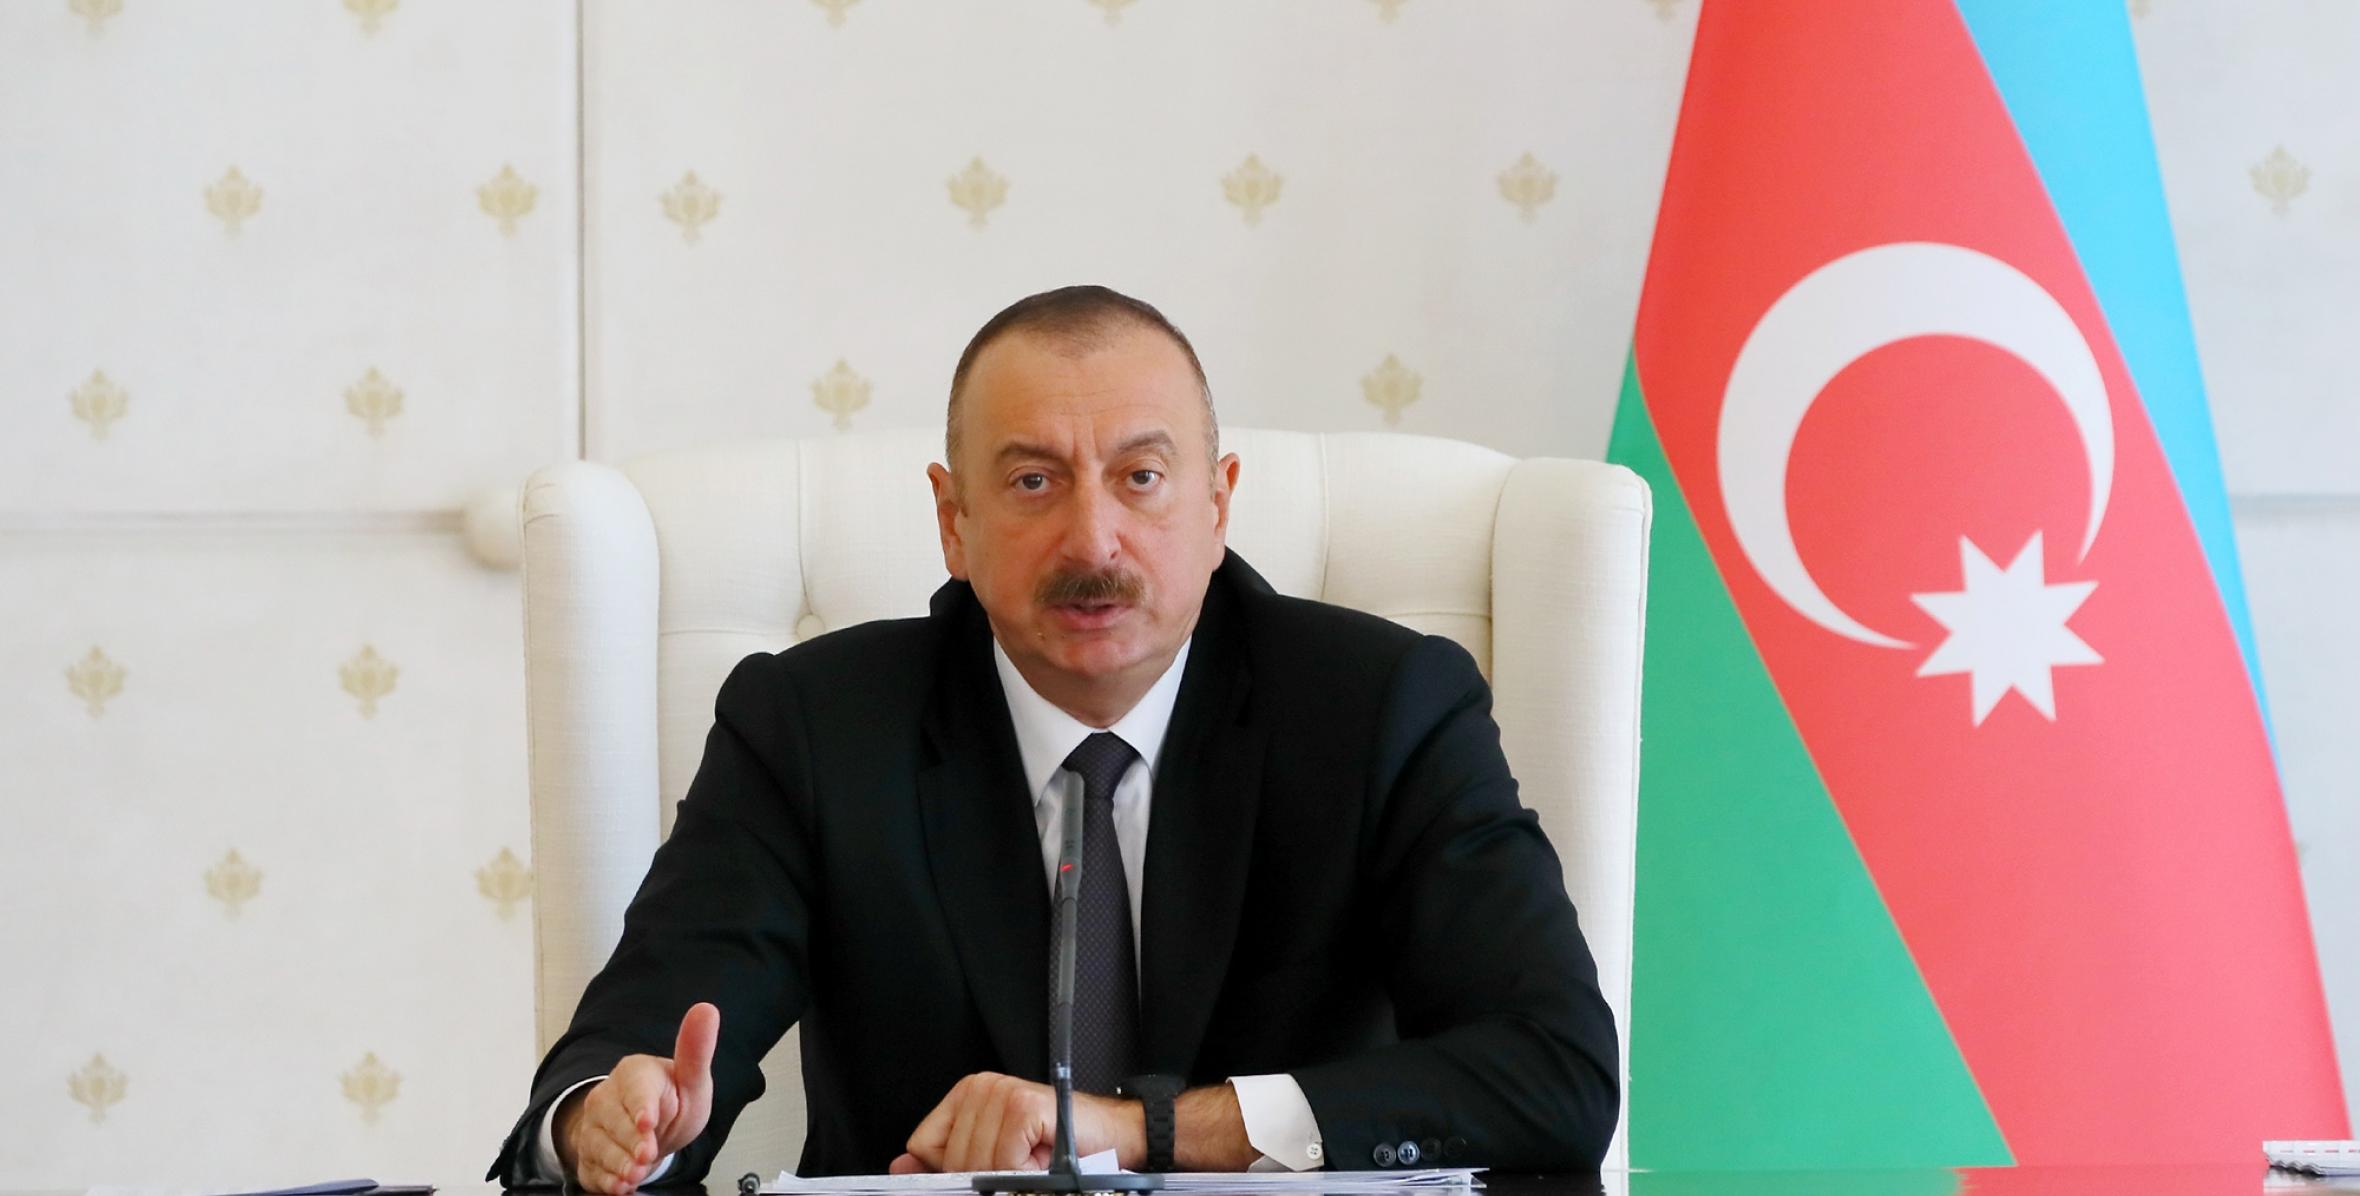 Заключительная речь Ильхама Алиева на заседании Кабинета Министров, посвященное итогам социально-экономического развития в первой половине 2017 года и предстоящим задачам